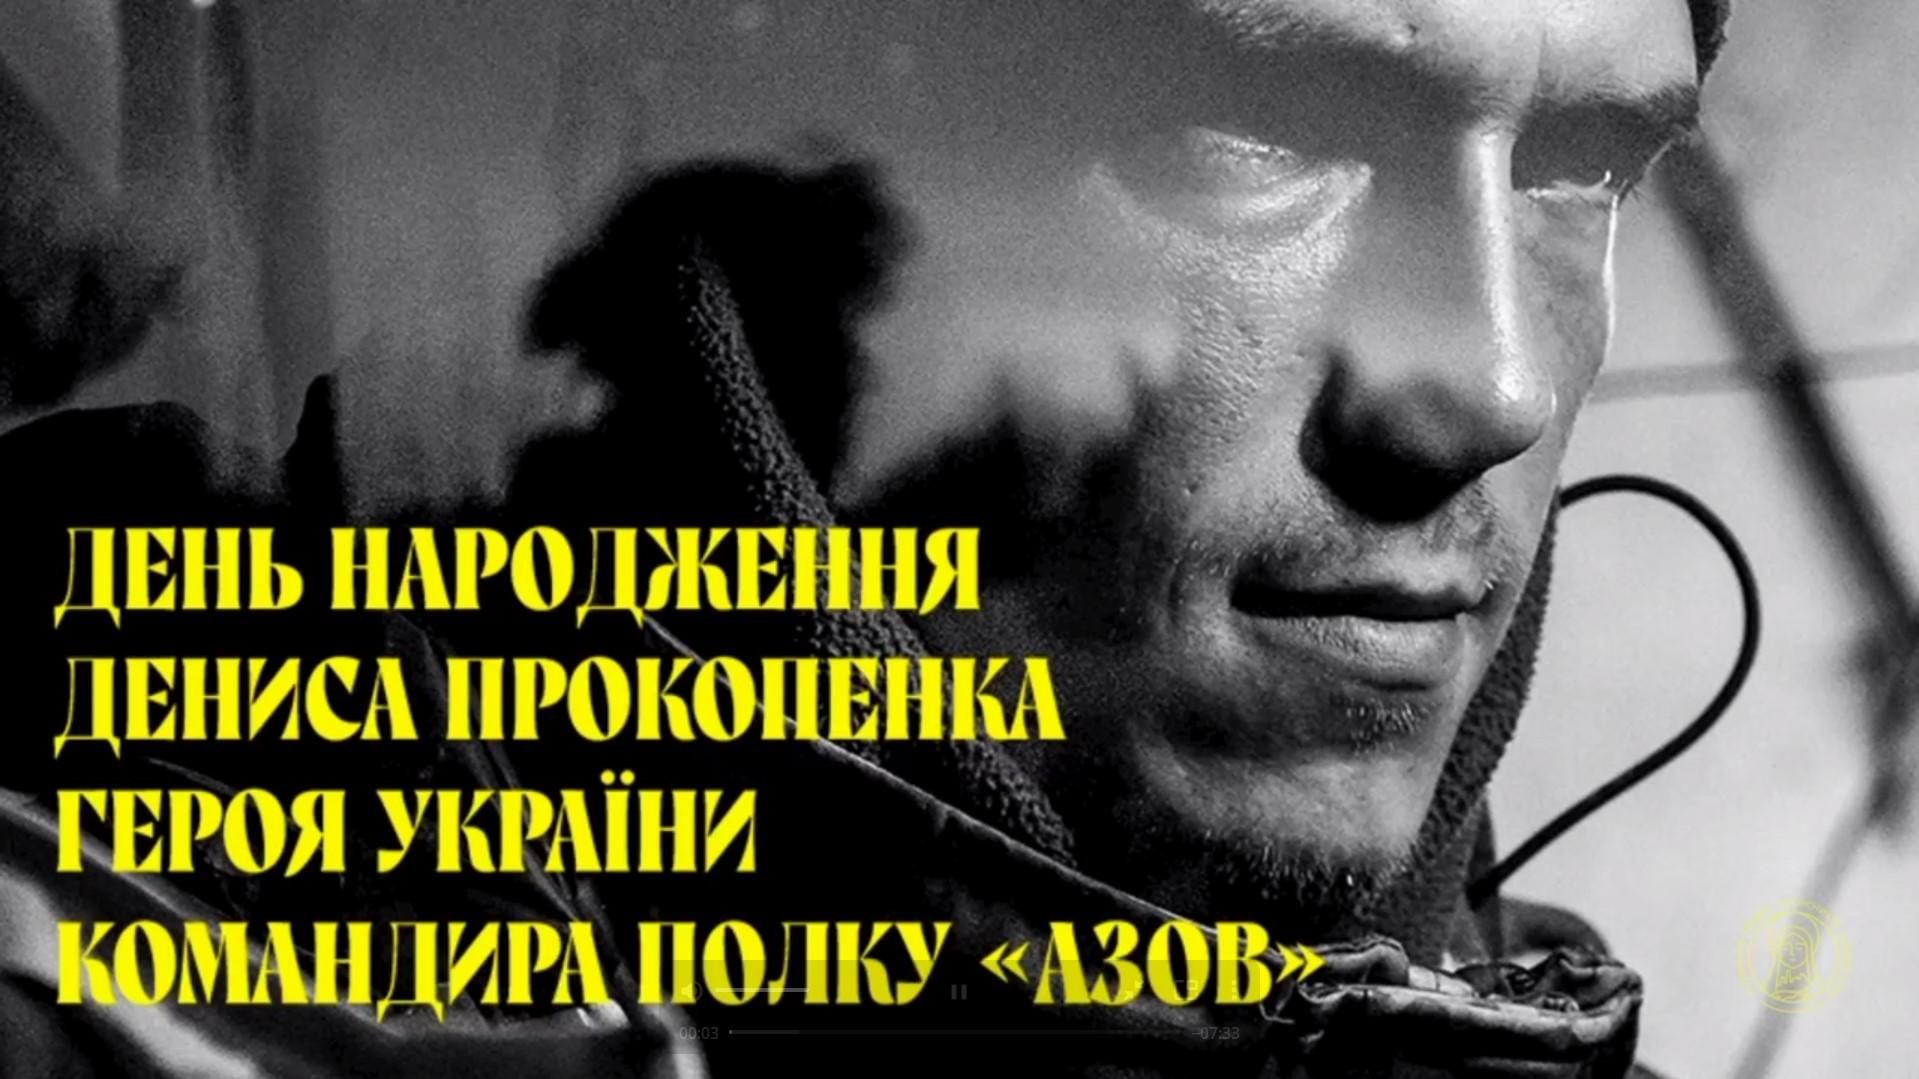 Командира Редиса Прокопенко поздравили Кличко и другие звезды: видео